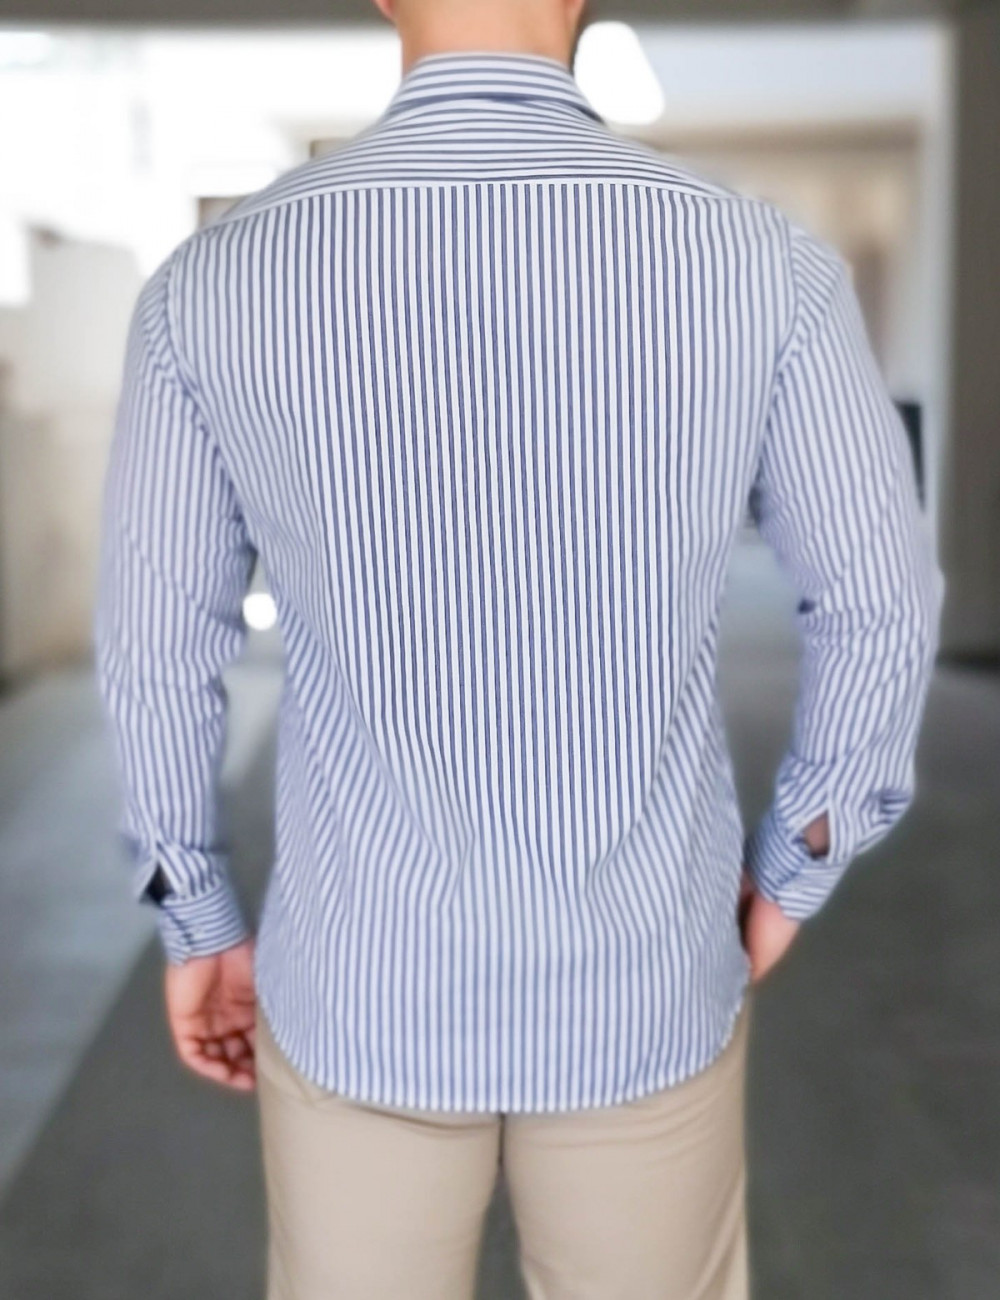 Ανδρικό μπλε ριγέ πουκάμισο Modern Fit 301511B